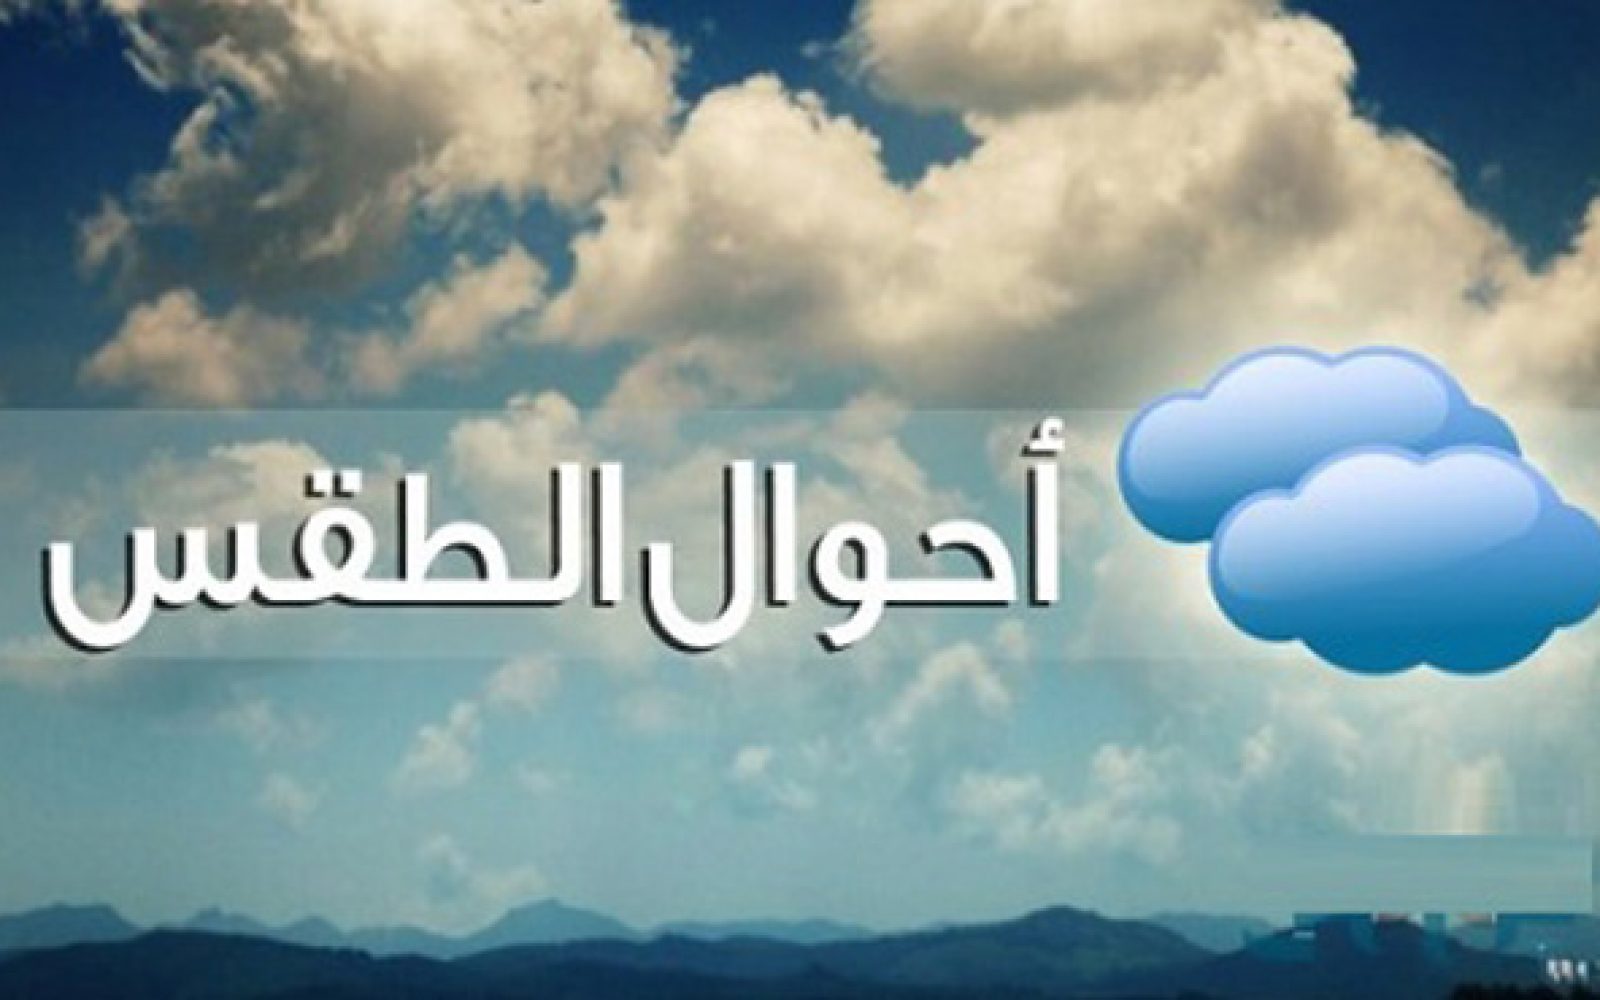 هذه توقعات حالة الطقس بأقاليم جهة مراكش آسفي اليوم الإثنين